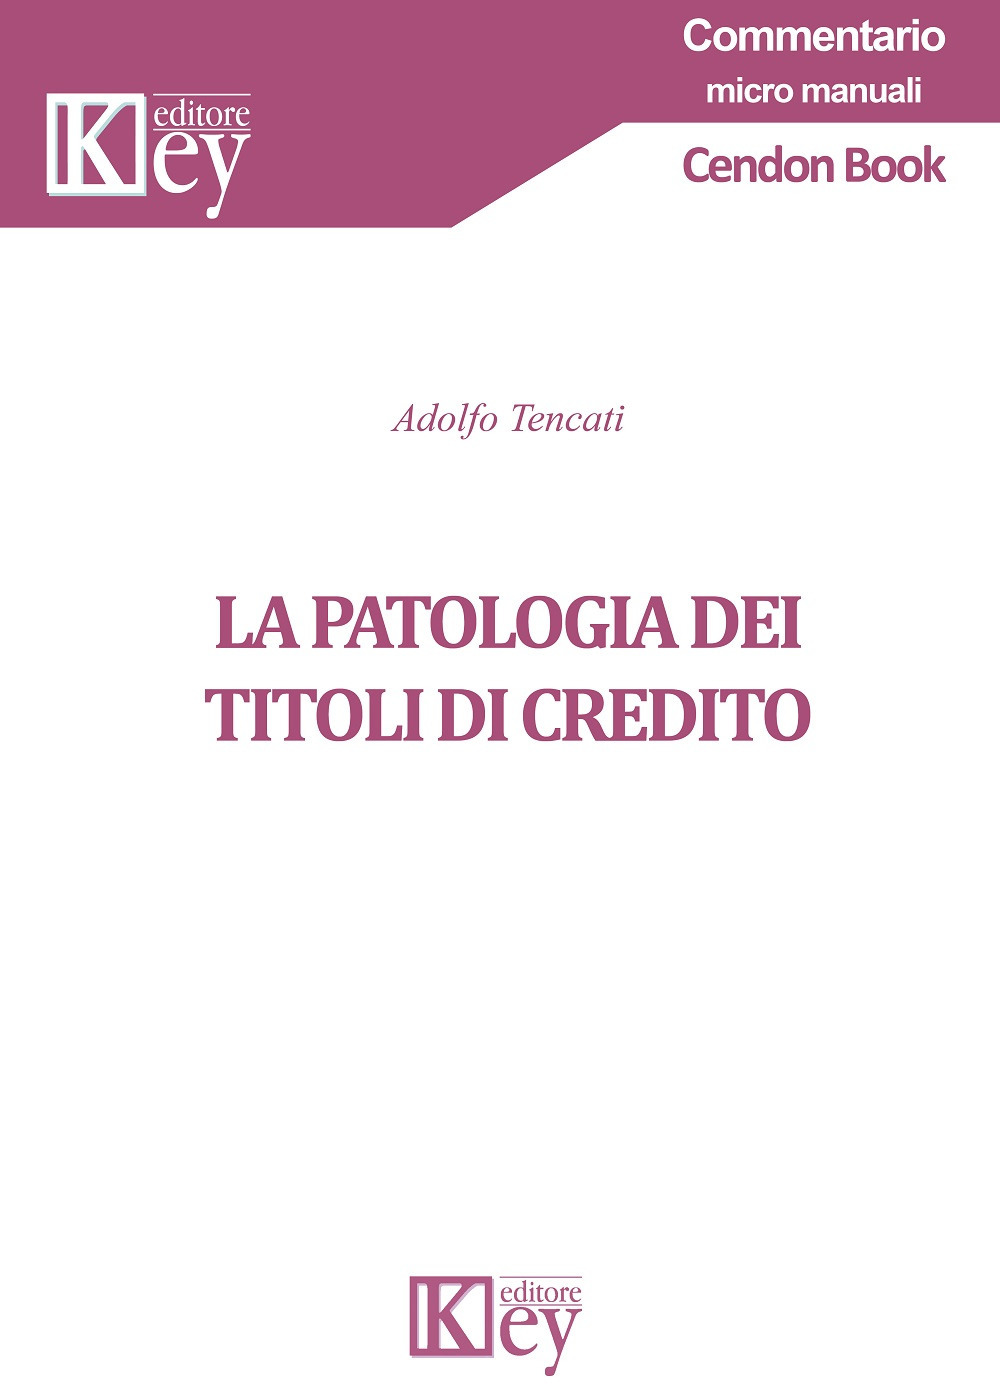 Libri Adolfo Tencati - La Patologia Dei Titoli Di Credito NUOVO SIGILLATO, EDIZIONE DEL 20/09/2019 SUBITO DISPONIBILE